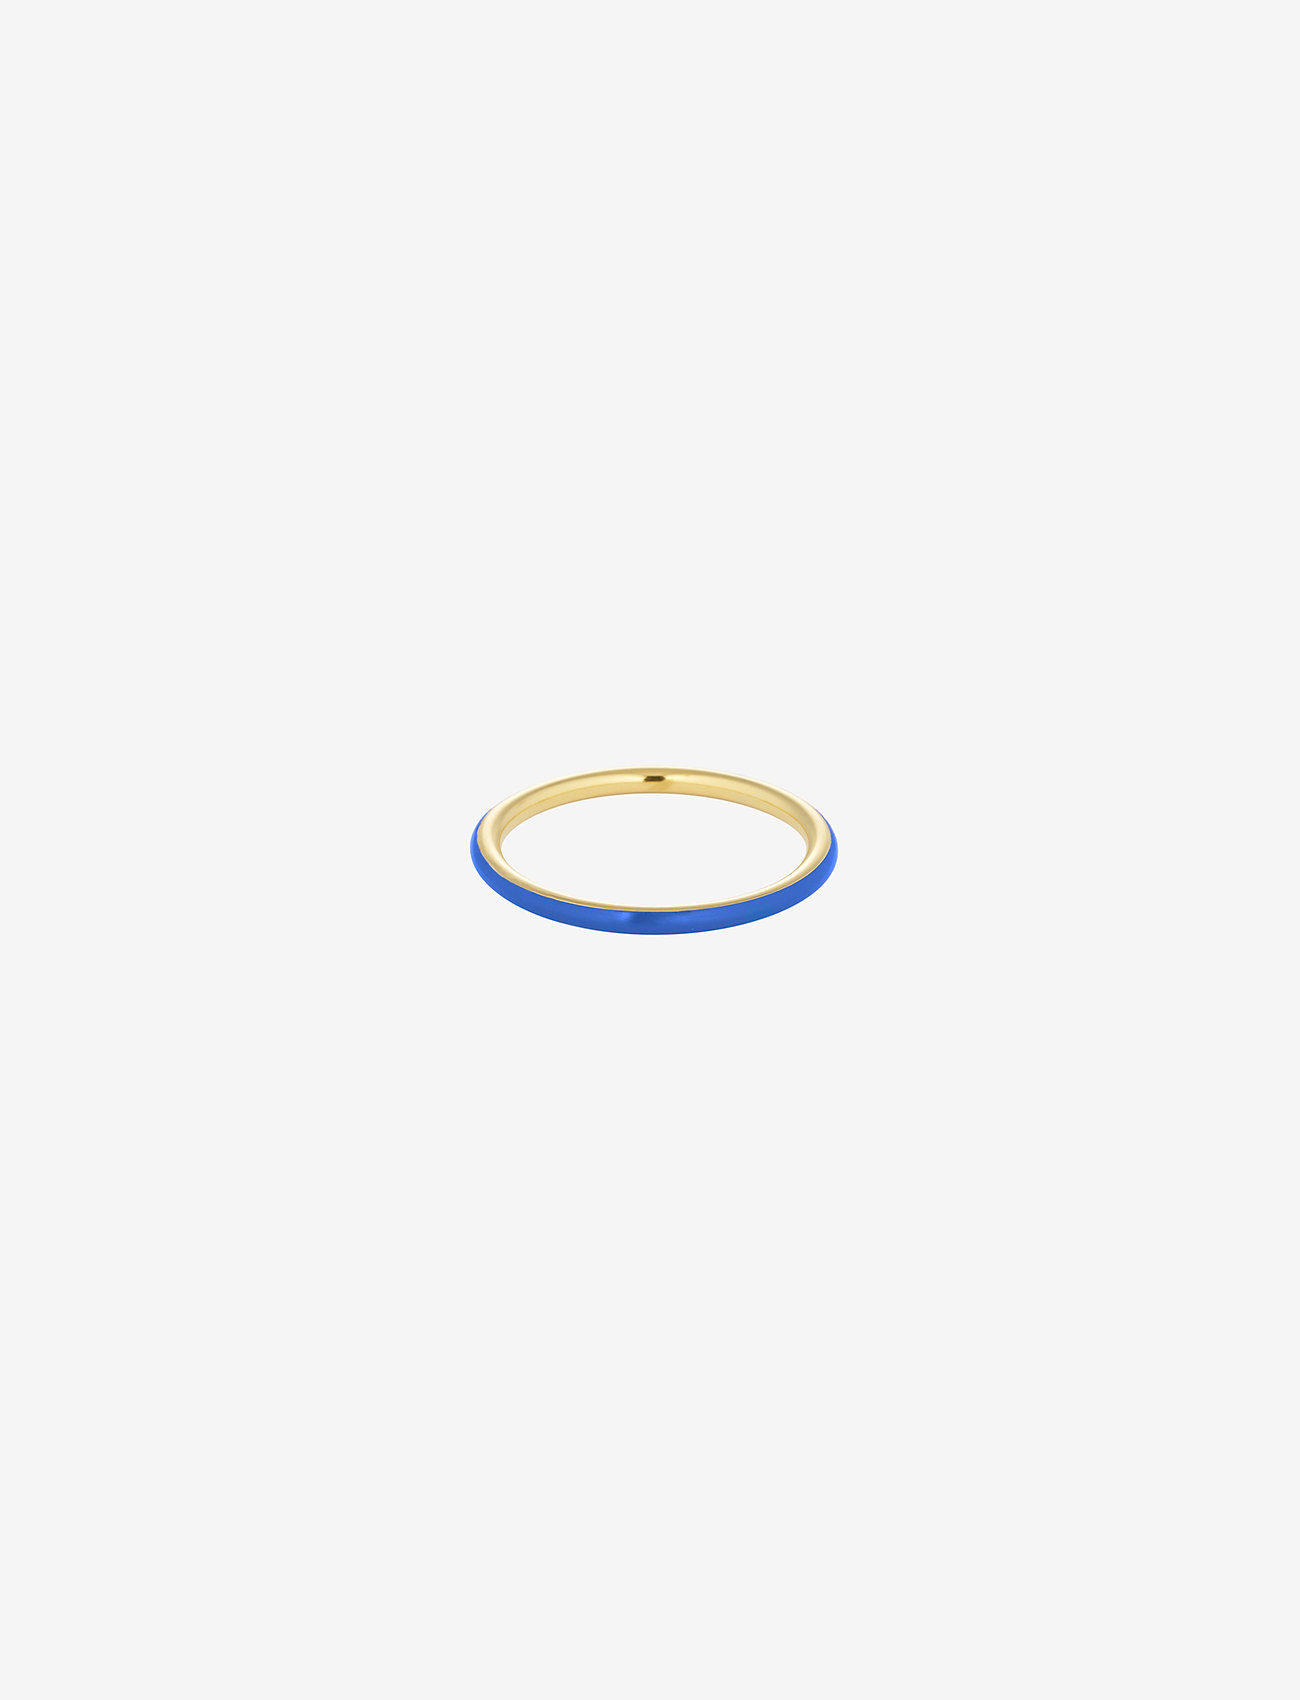 Design Letters - Classic Stack Ring - odzież imprezowa w cenach outletowych - cobalt blue 2728c - 0